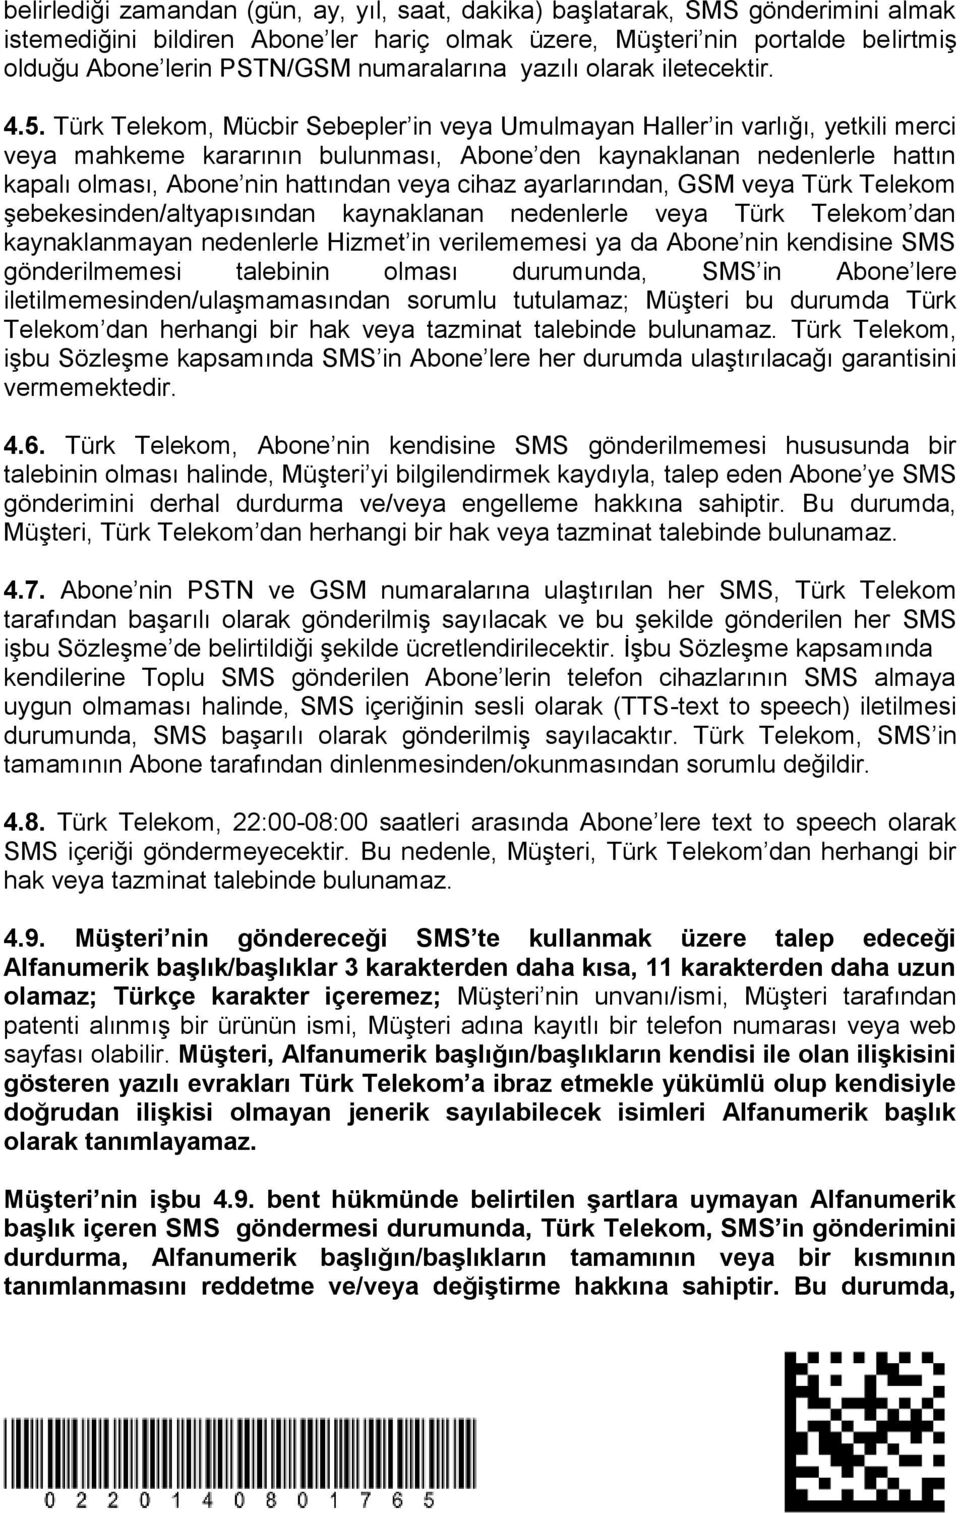 Türk Telekom, Mücbir Sebepler in veya Umulmayan Haller in varlığı, yetkili merci veya mahkeme kararının bulunması, Abone den kaynaklanan nedenlerle hattın kapalı olması, Abone nin hattından veya